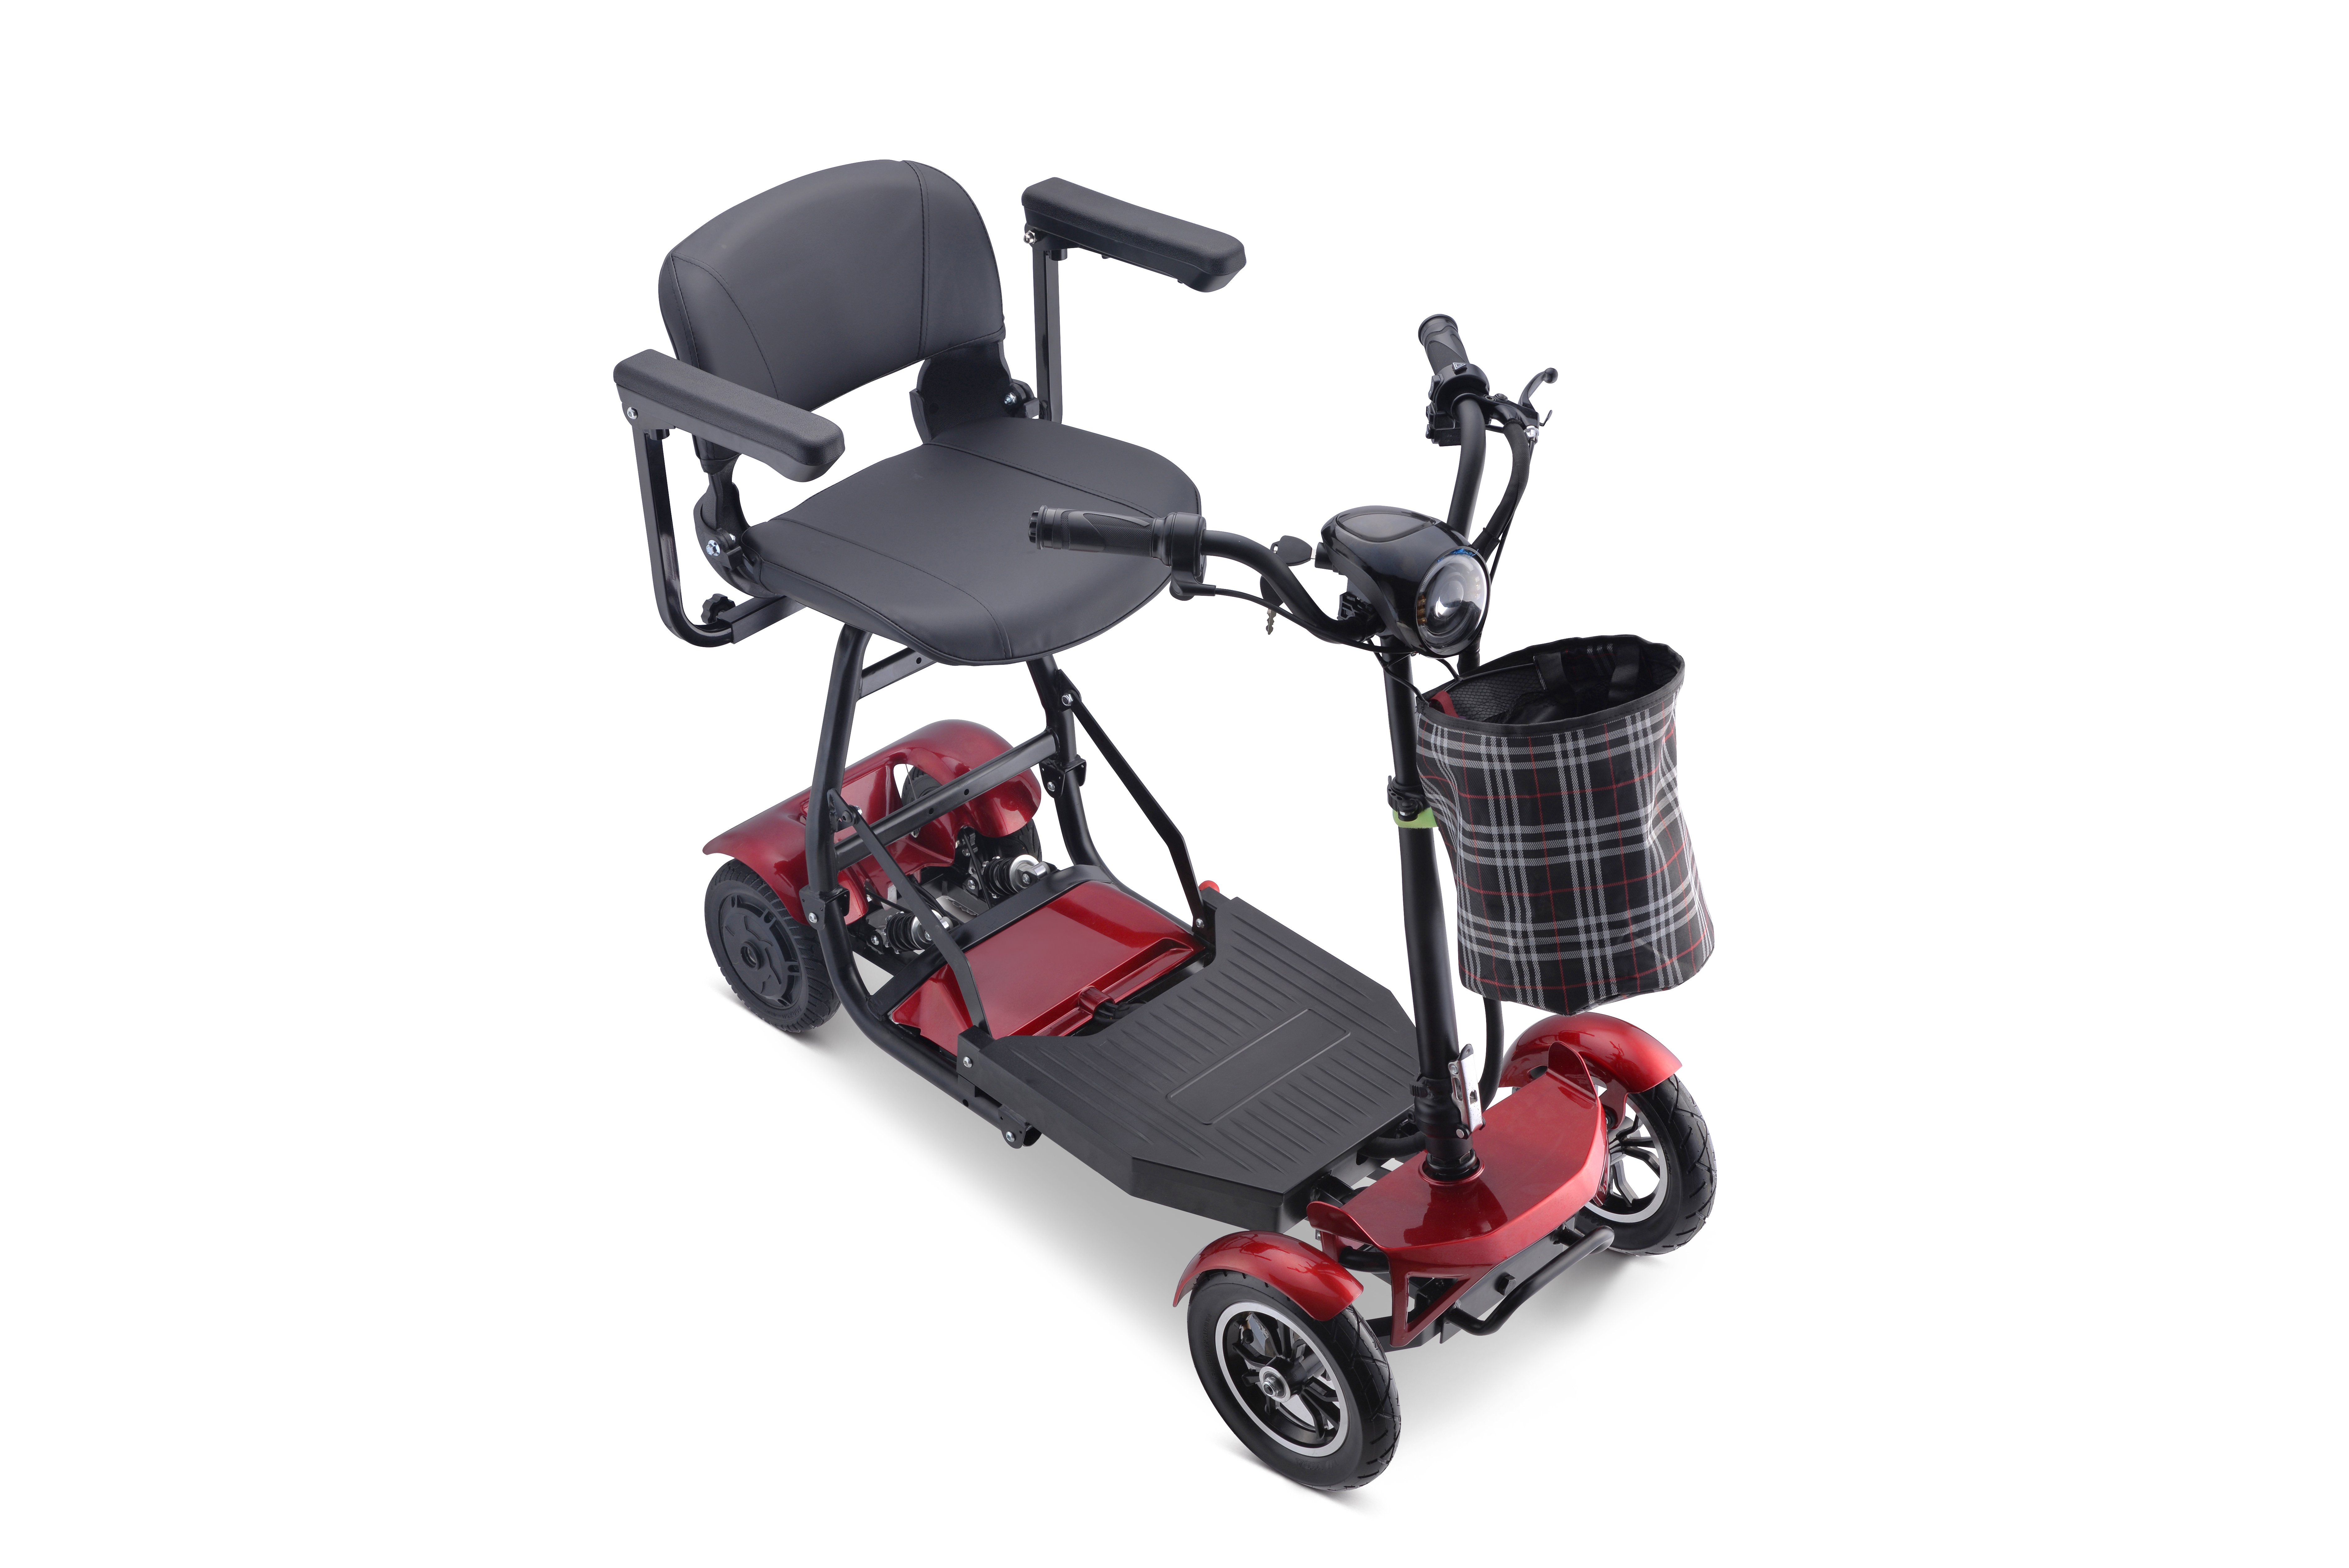 Elektrisches Fahrzeug mit Babysitz, Fracht, lange Reichweite, E-Tricycle, Auto, Richshaw, Mobilitätsroller, vorgestelltes Bild